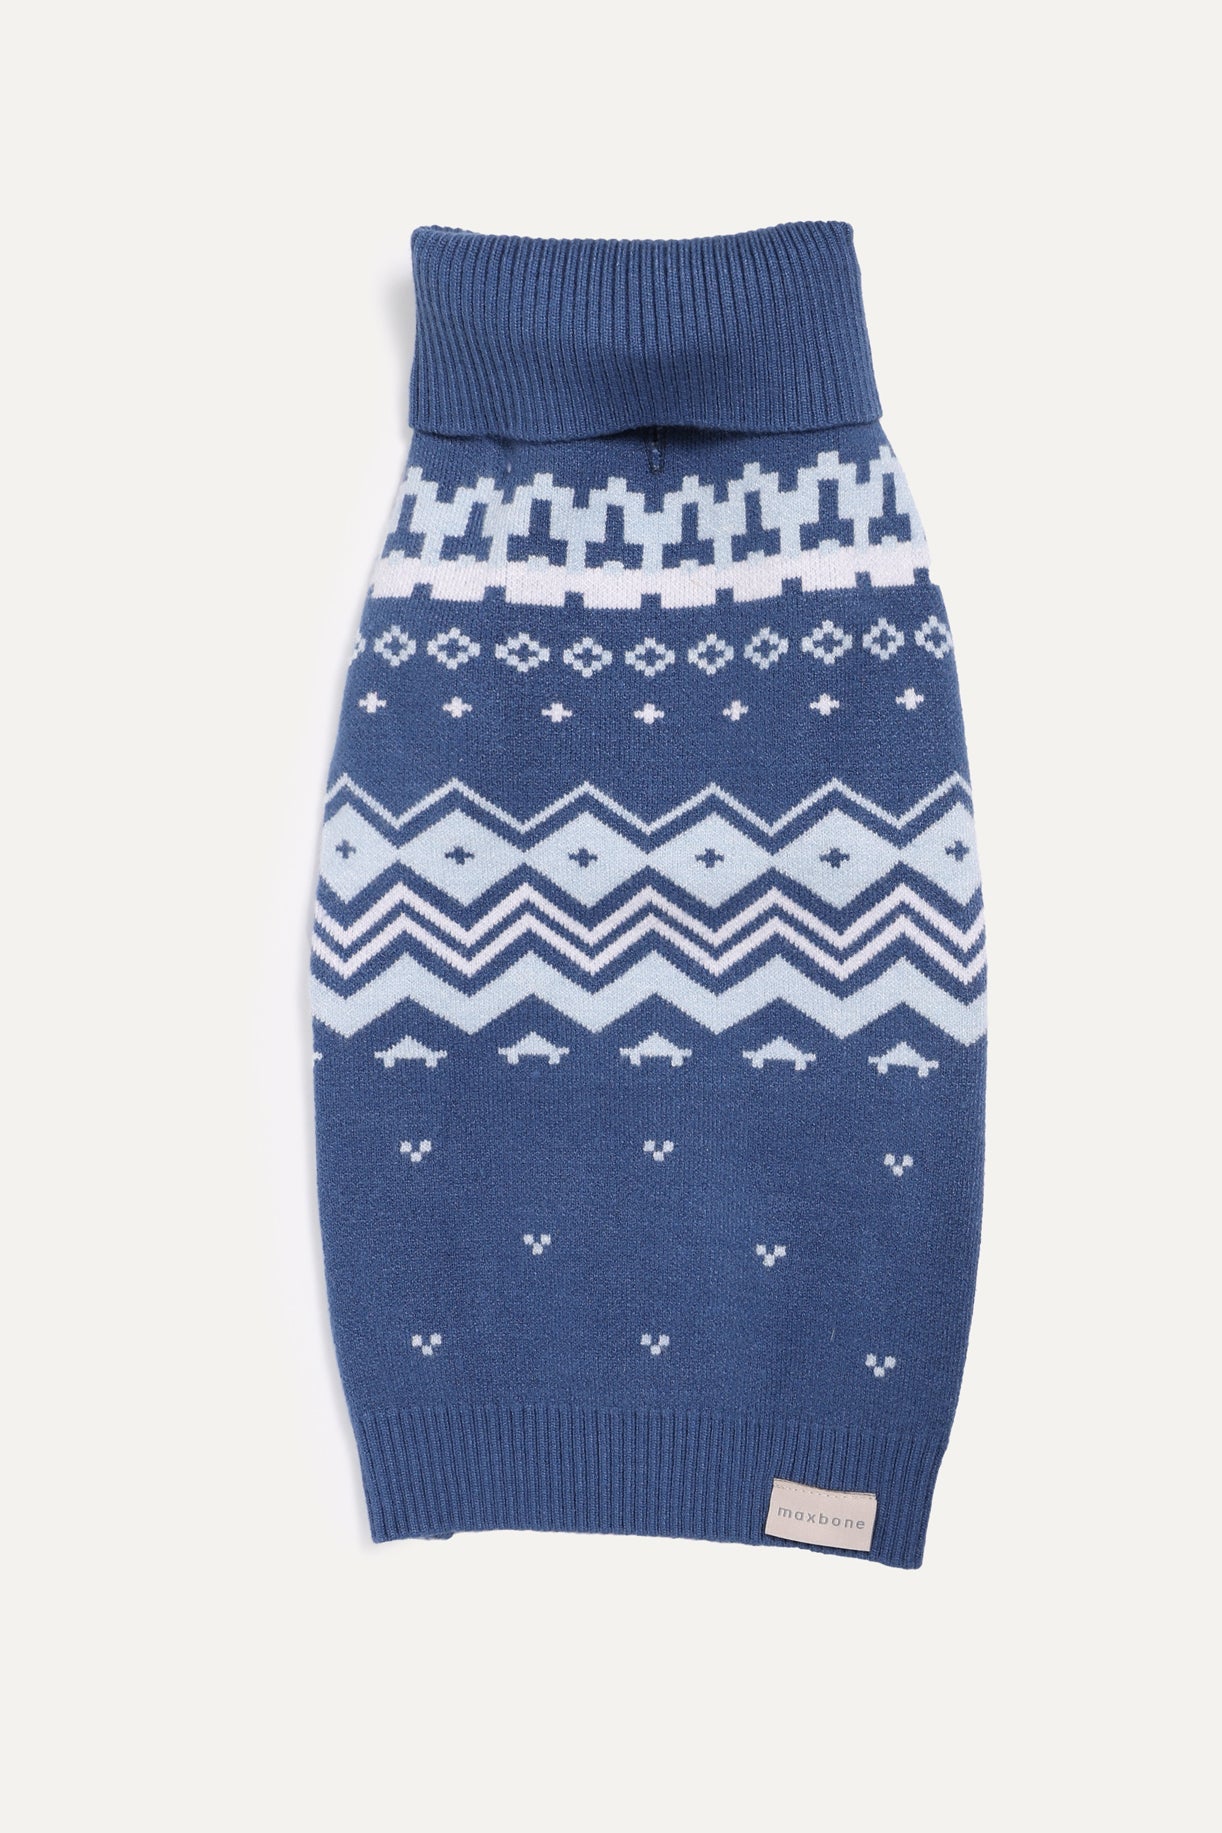 Winter Nordic Knit Jumper - maxbone